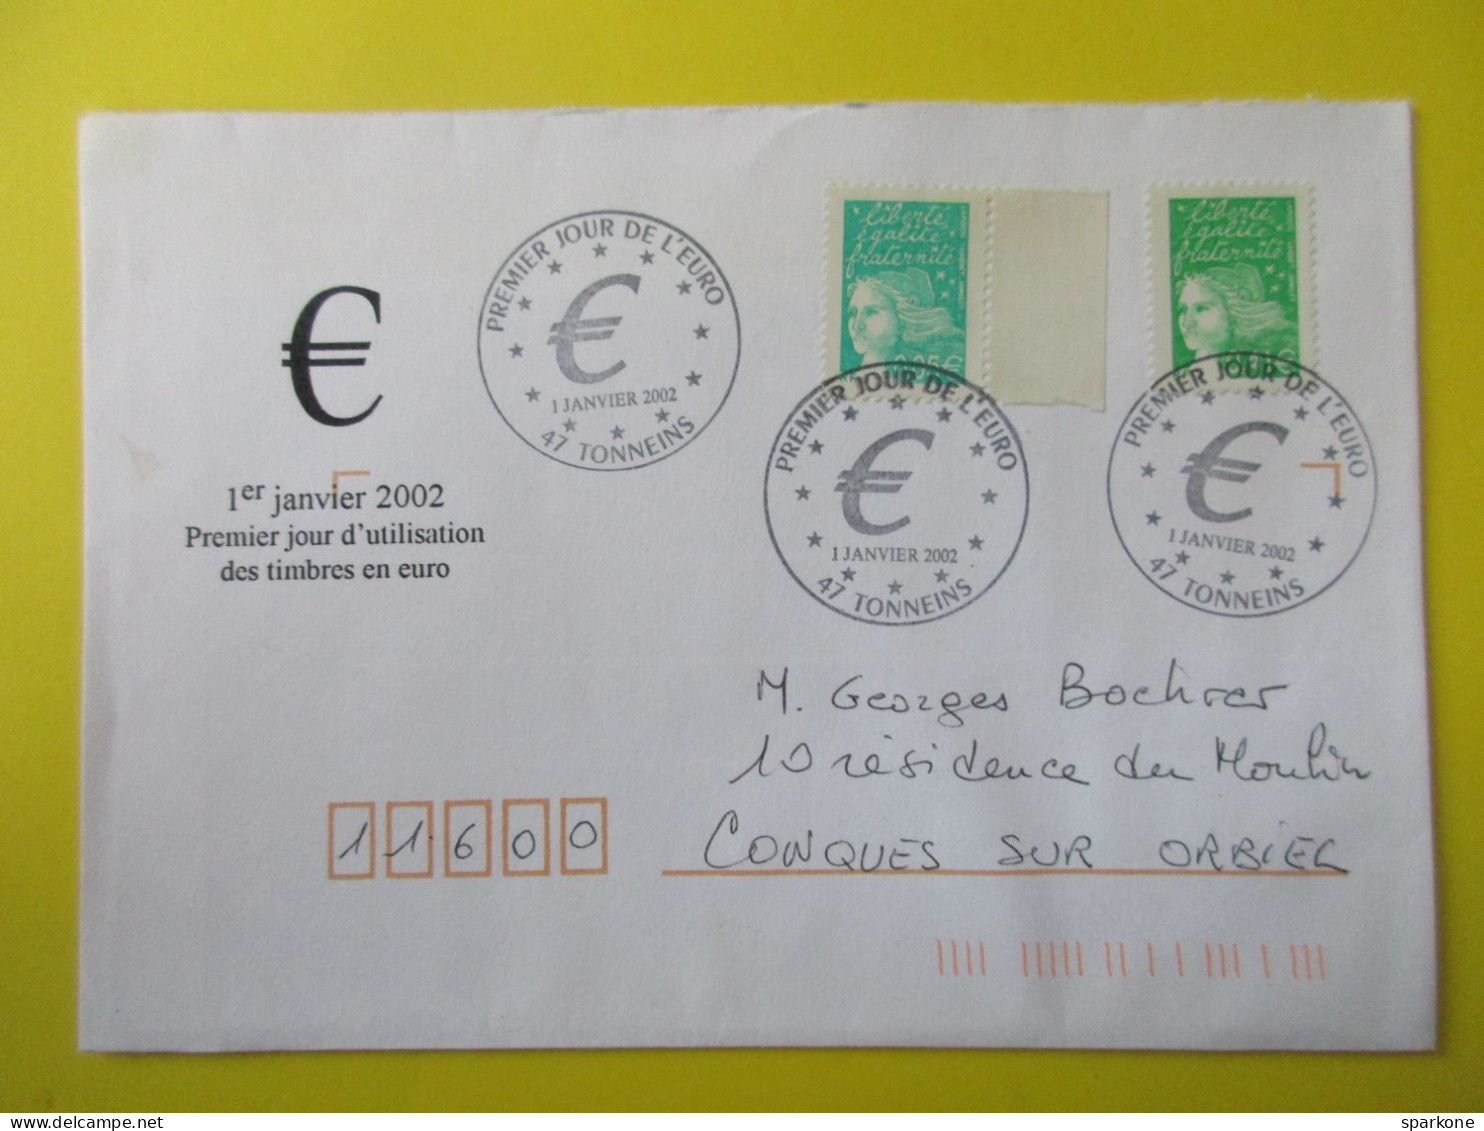 Marcophilie - Enveloppe - France - Cachet Commémoratif - Timbres Poste En €uros - 01 Janvier 2002 - Bolli Commemorativi